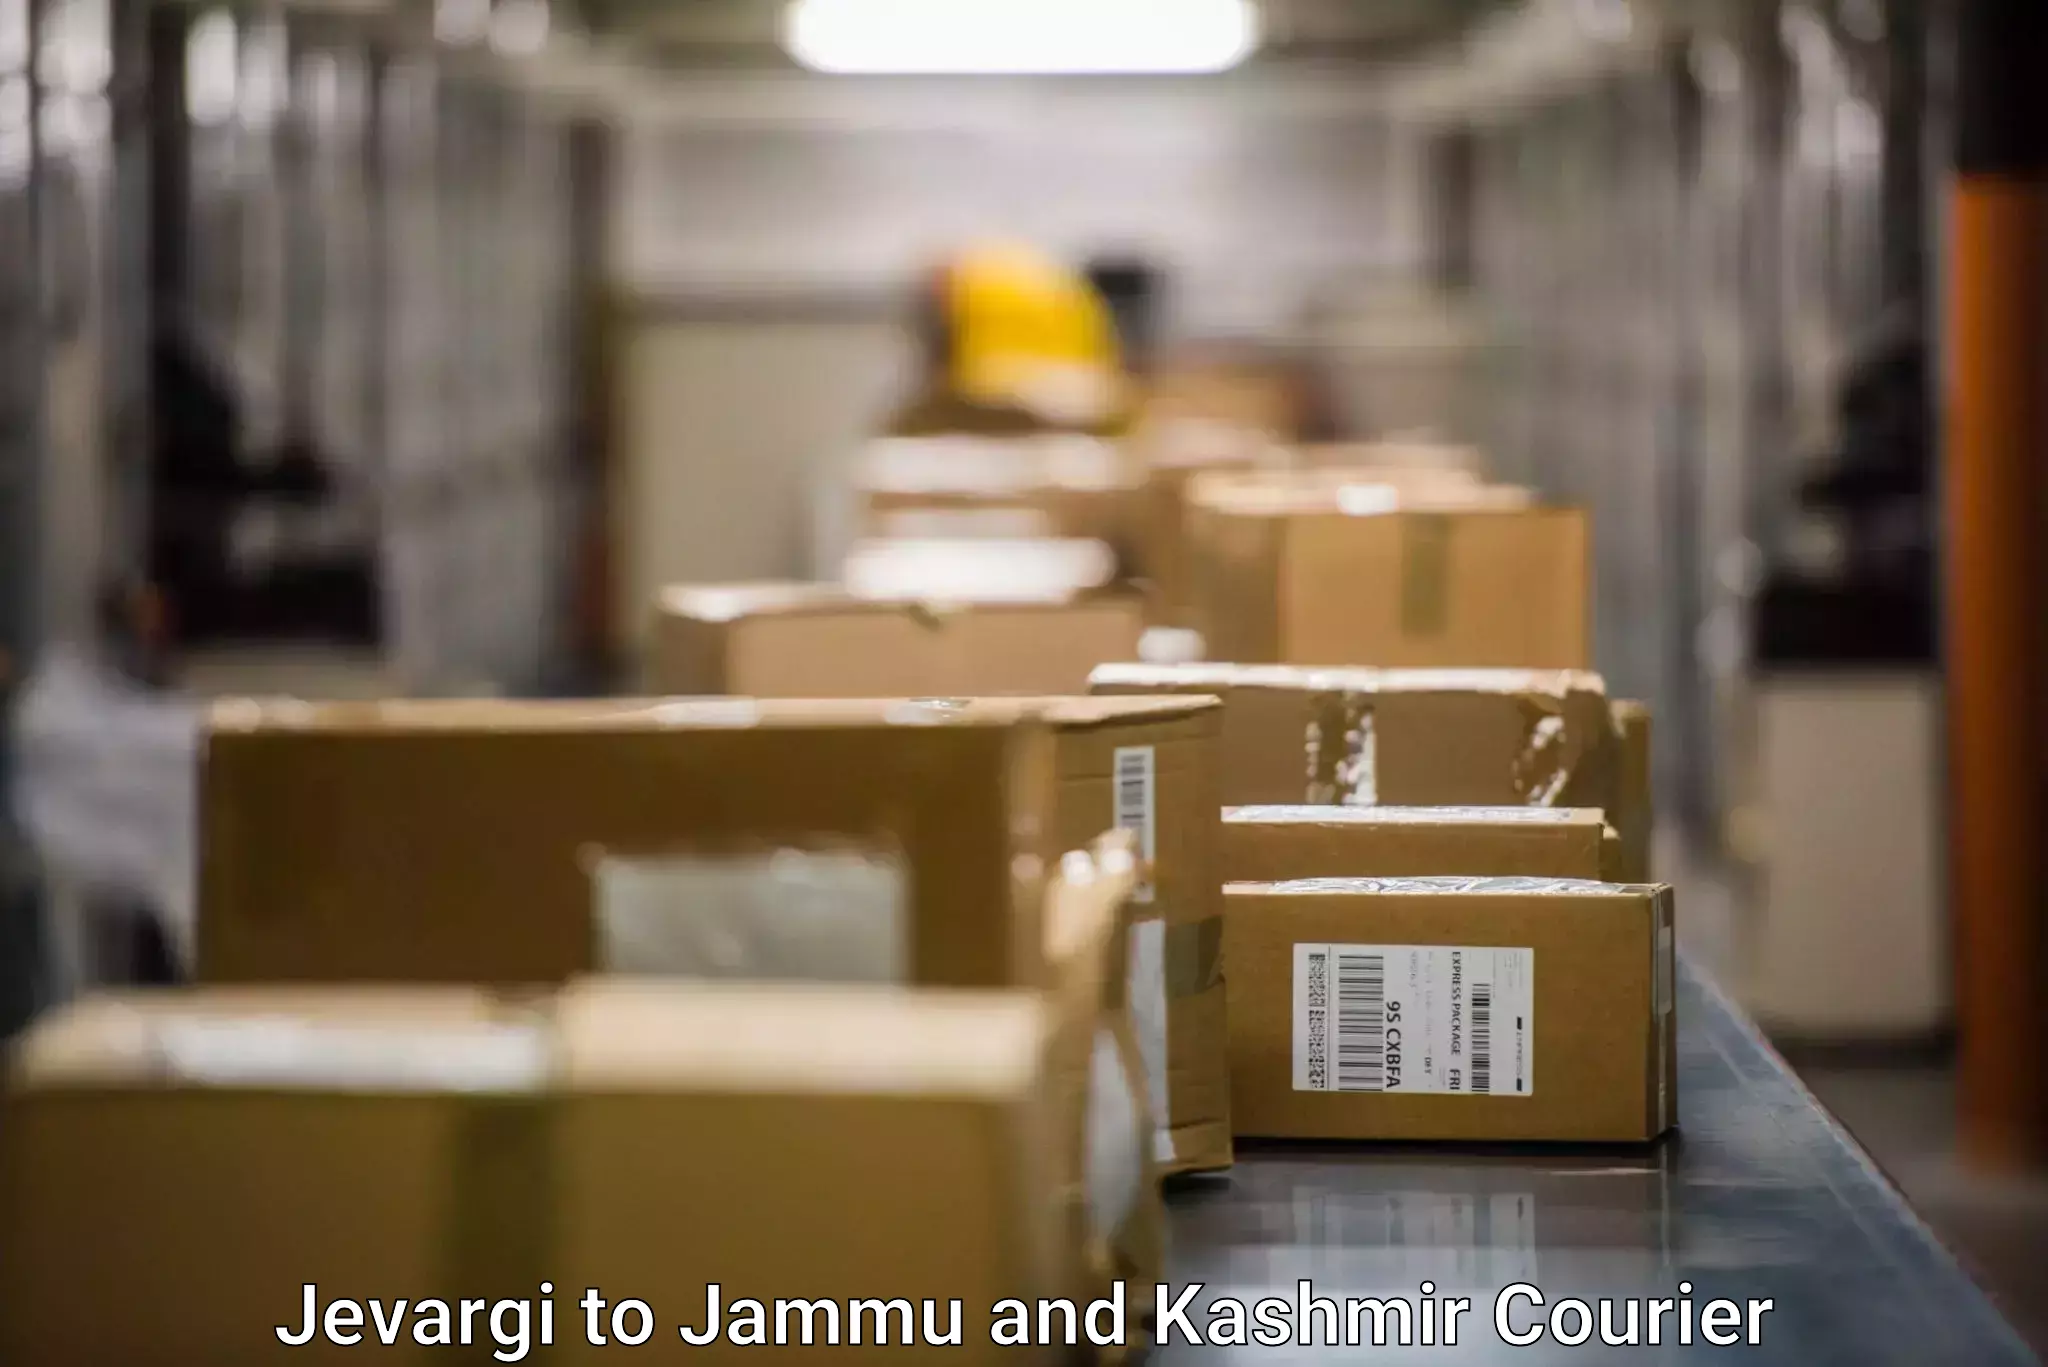 Cash on delivery service Jevargi to University of Jammu